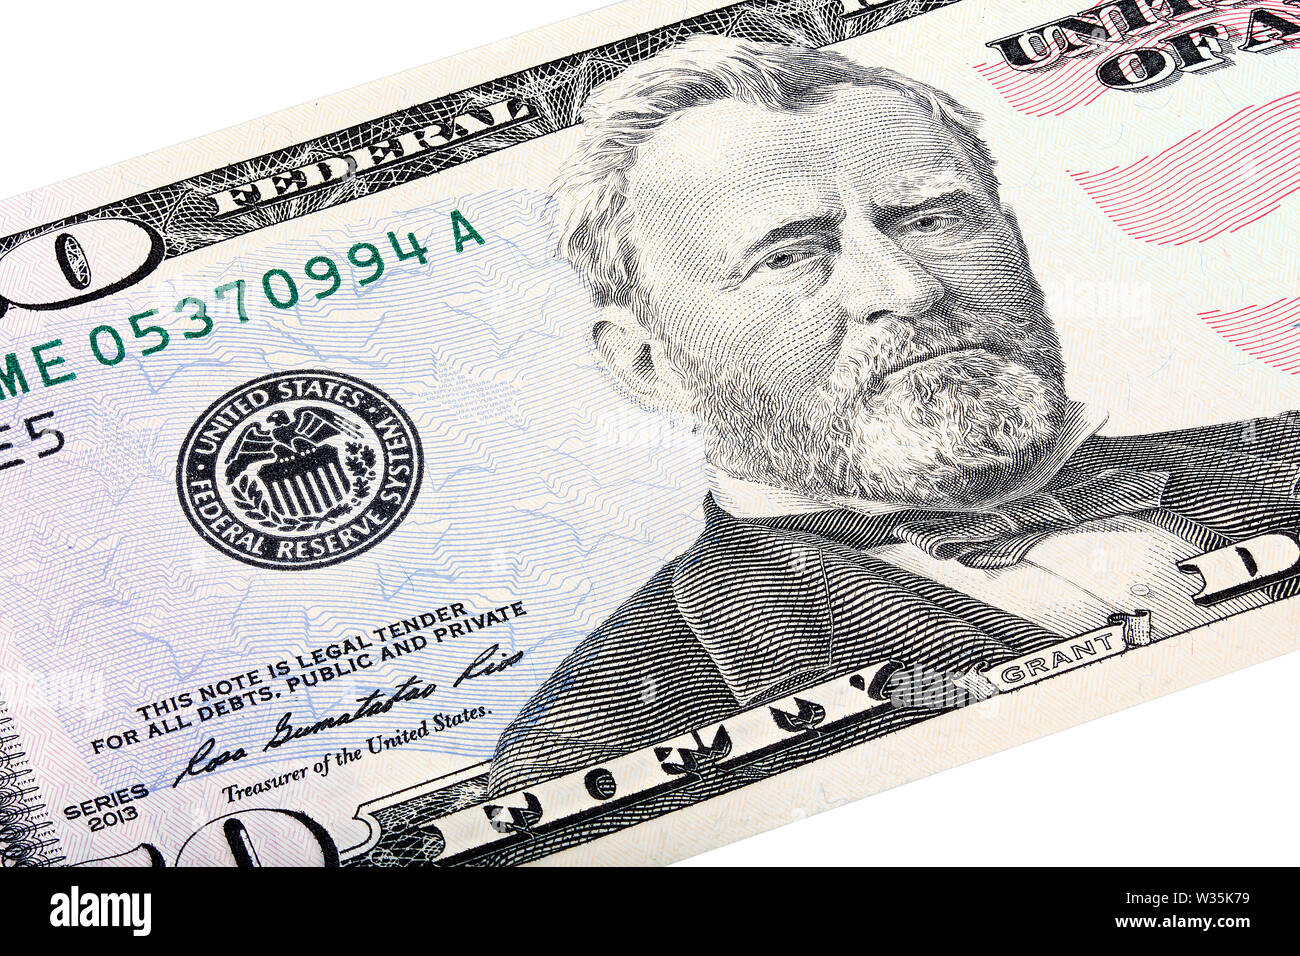 Empilés sur une cinquante Américains 50 dollar bill, close-up de fin de subvention du Système fédéral de réserve. Banque D'Images